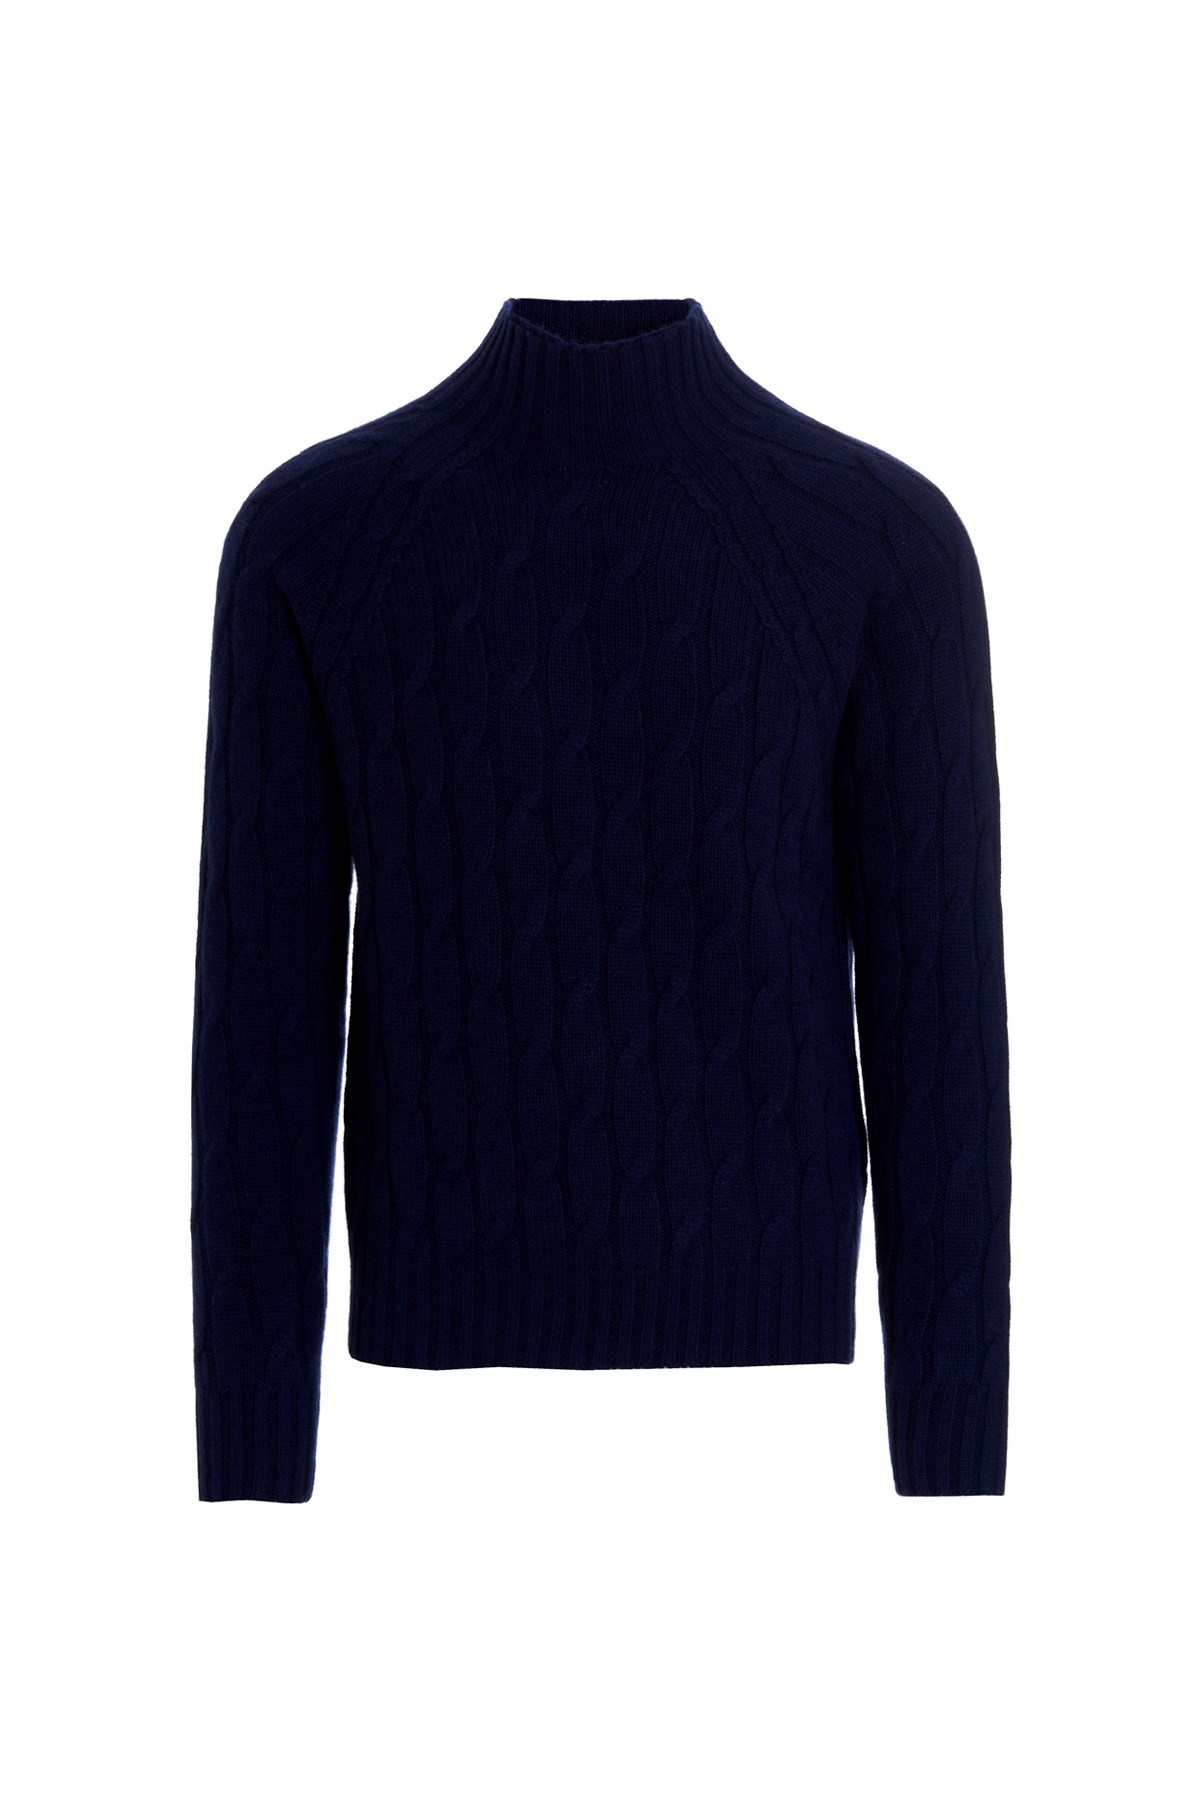 DRUMOHR Braided Cashmere Sweater